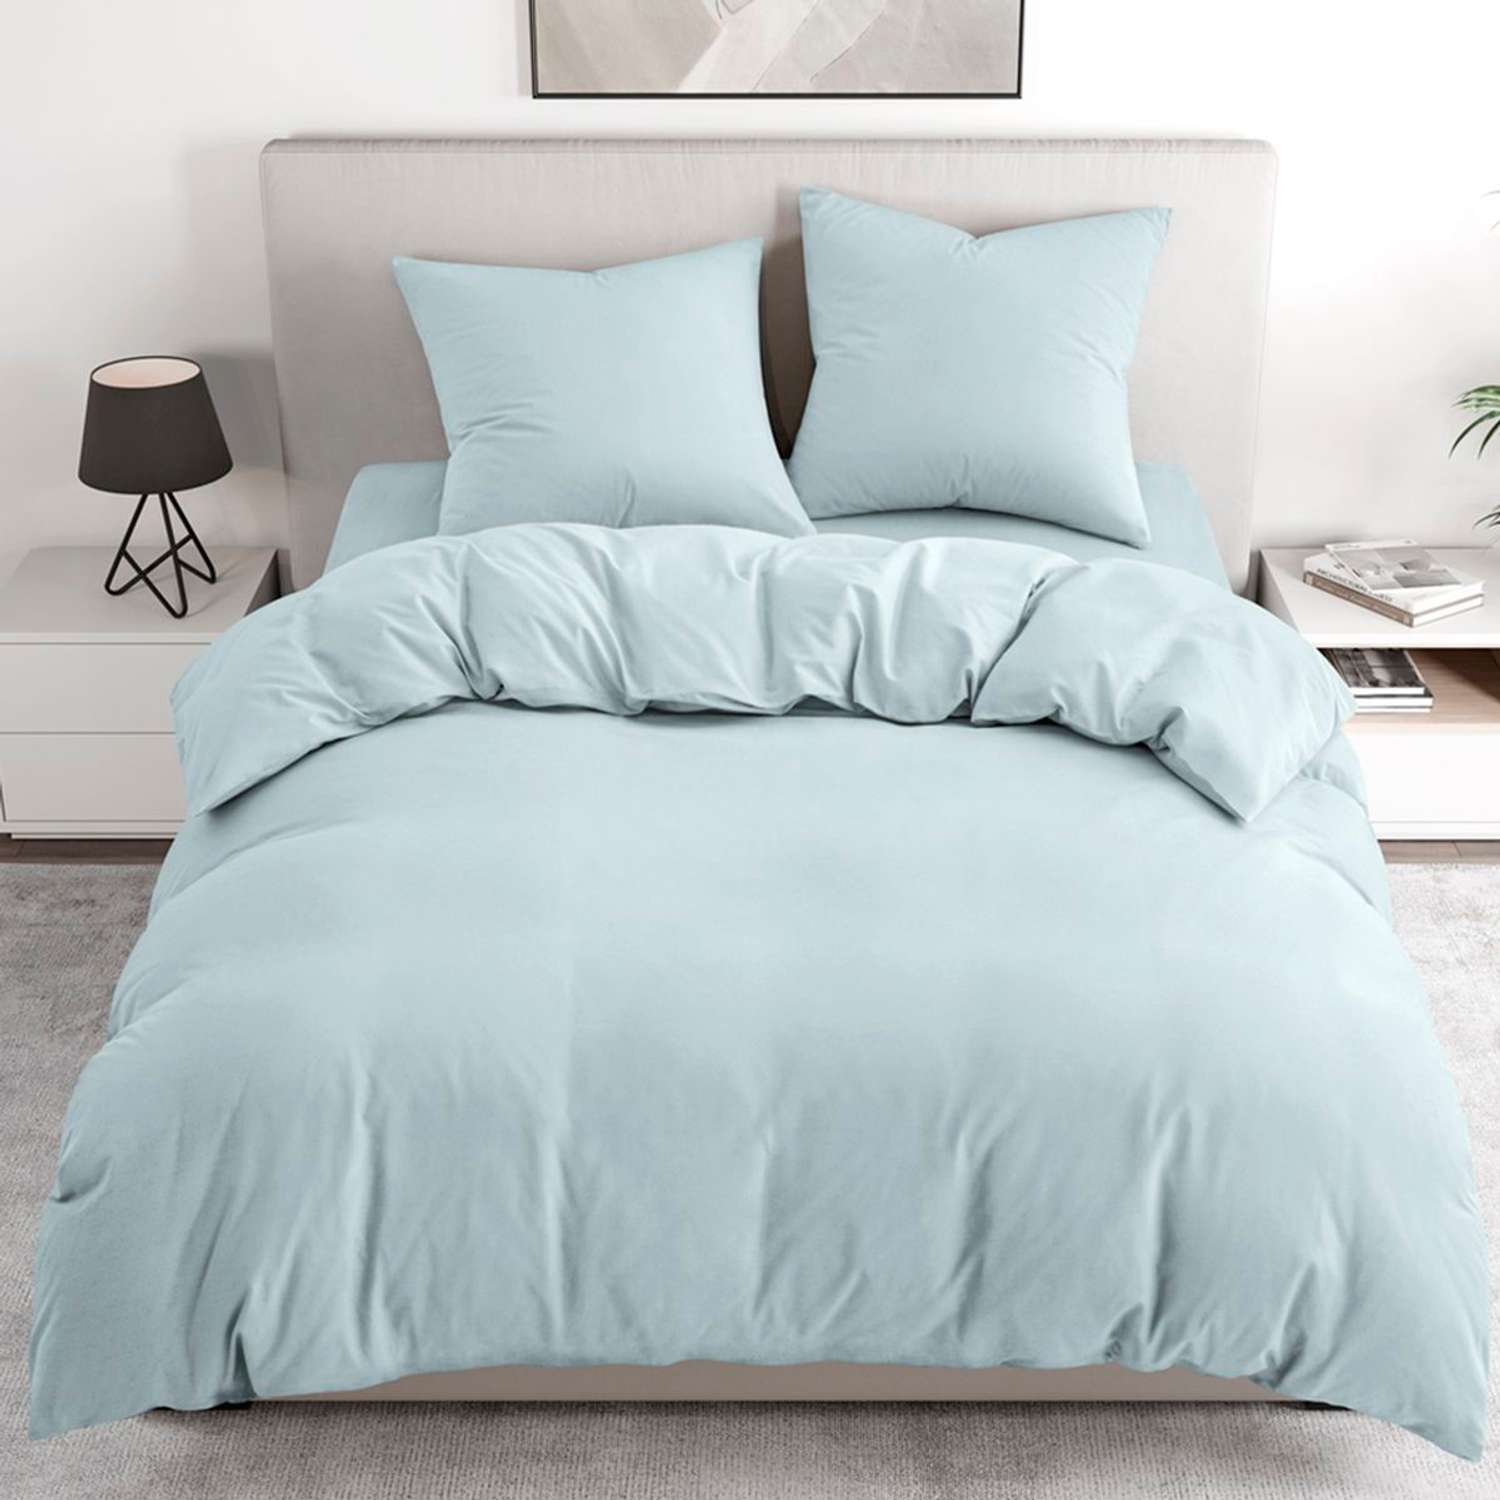 Комплект постельного белья BRAVO 1.5-спальный наволочки 70х70 рис.5835-1 голубой - фото 1